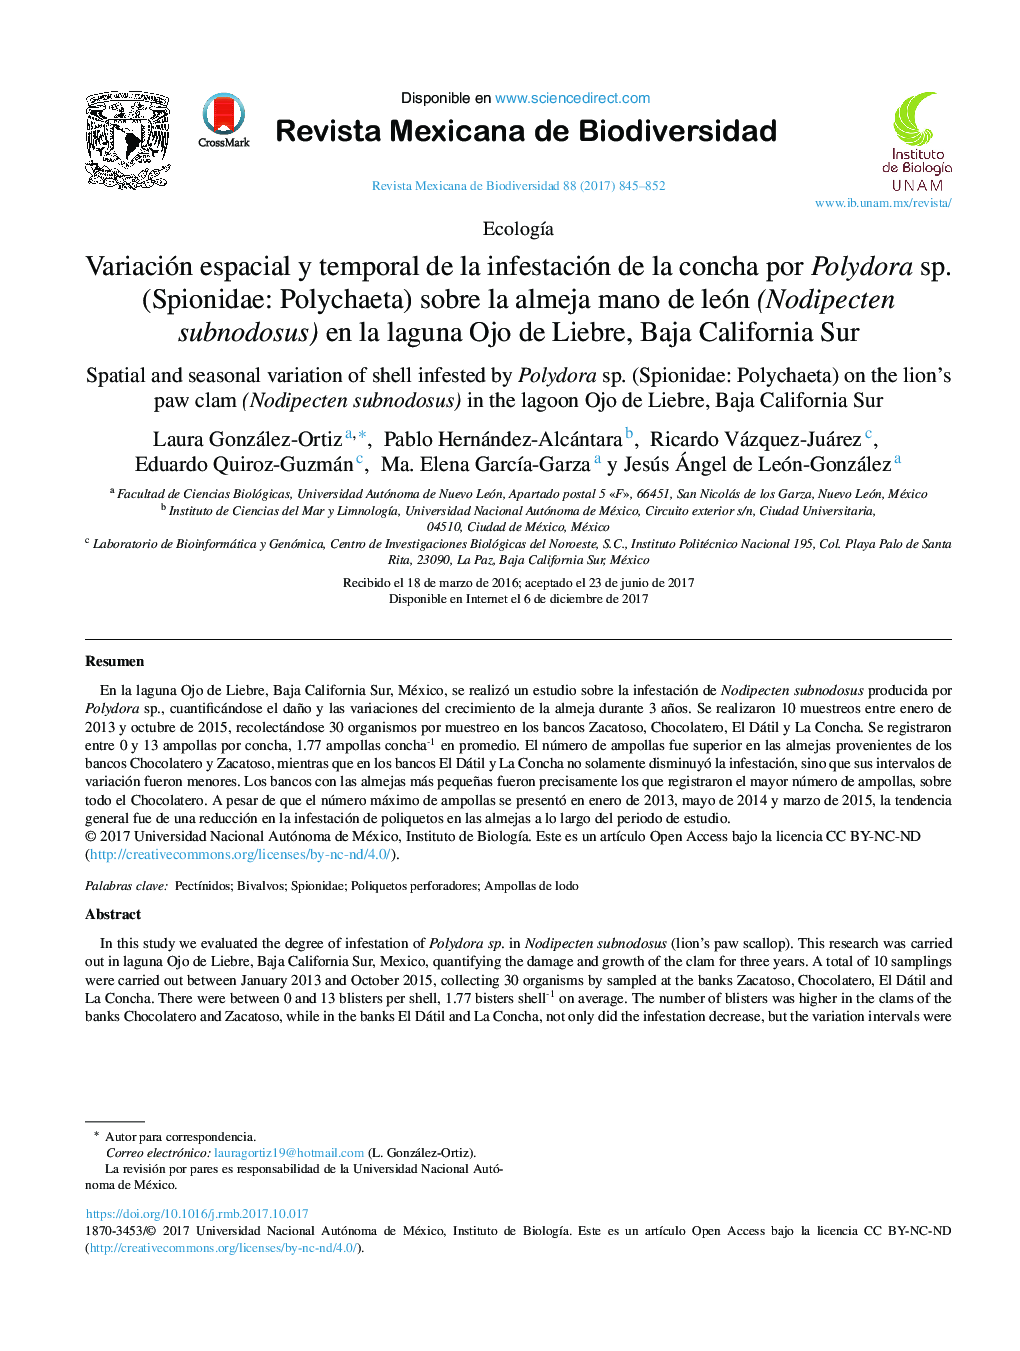 Variación espacial y temporal de la infestación de la concha por Polydora sp. (Spionidae: Polychaeta) sobre la almeja mano de león (Nodipecten subnodosus) en la laguna Ojo de Liebre, Baja California Sur